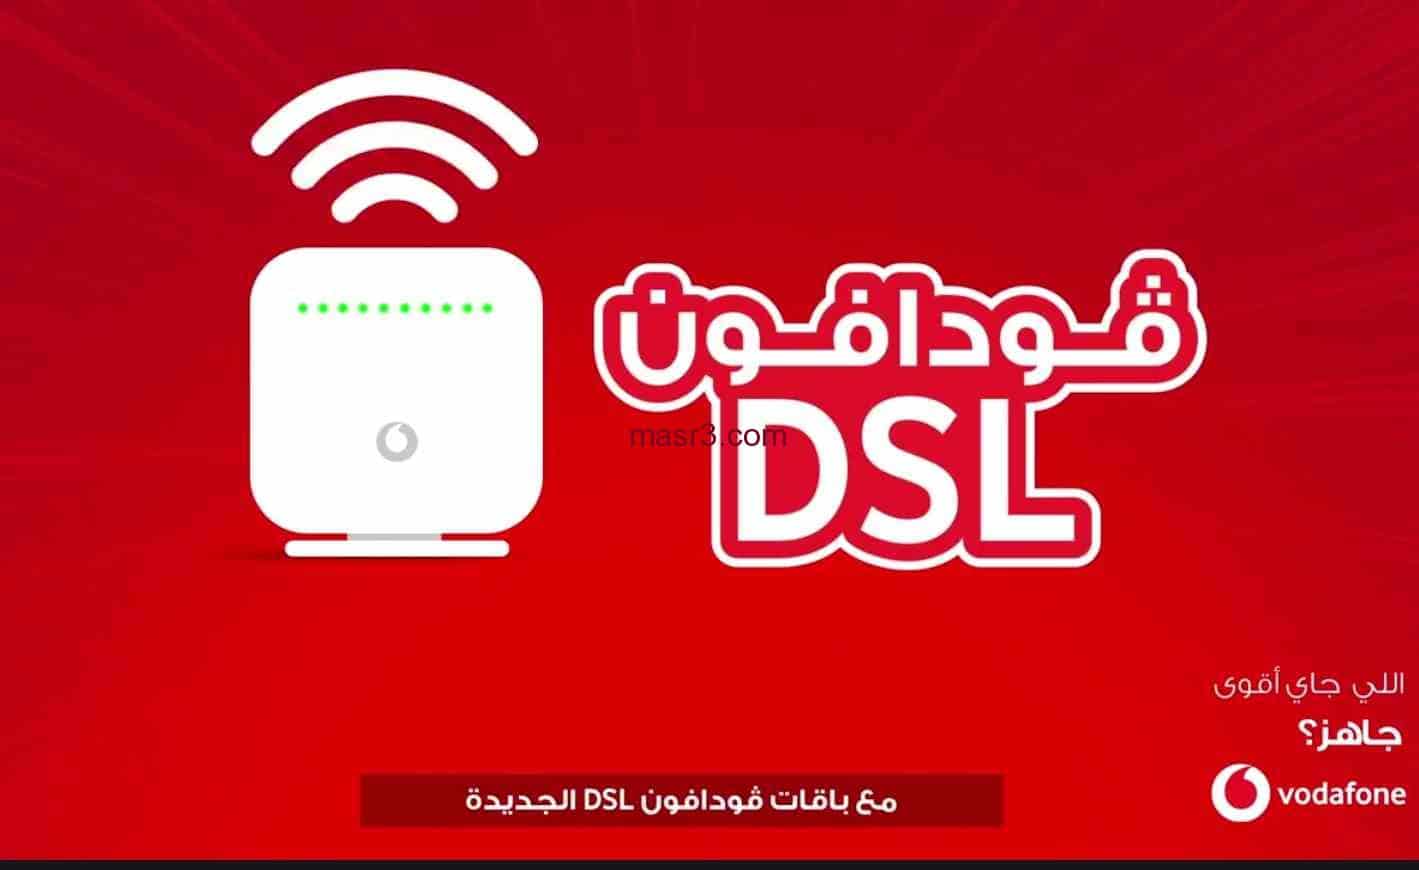 باقات الانترنت المنزلي من فودافون 2022 خدمات vodafone egypt